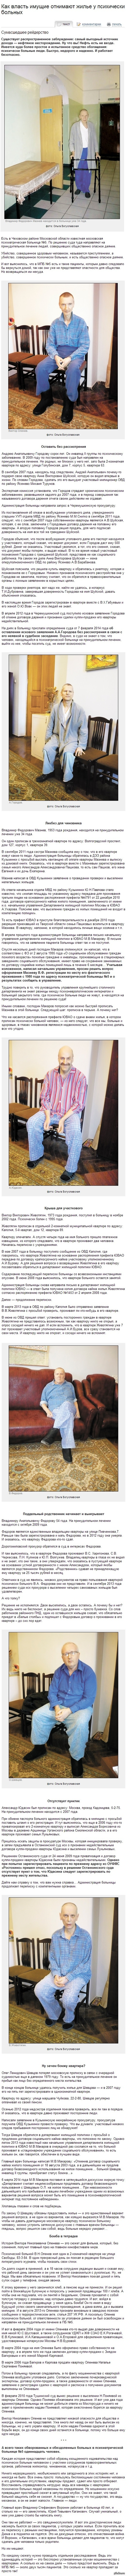         http://www.mk.ru/social/article/2014/03/27/1005164-kak-vlast-imuschie-otnimayut-zhile-u-psihicheski-bolnyih.html